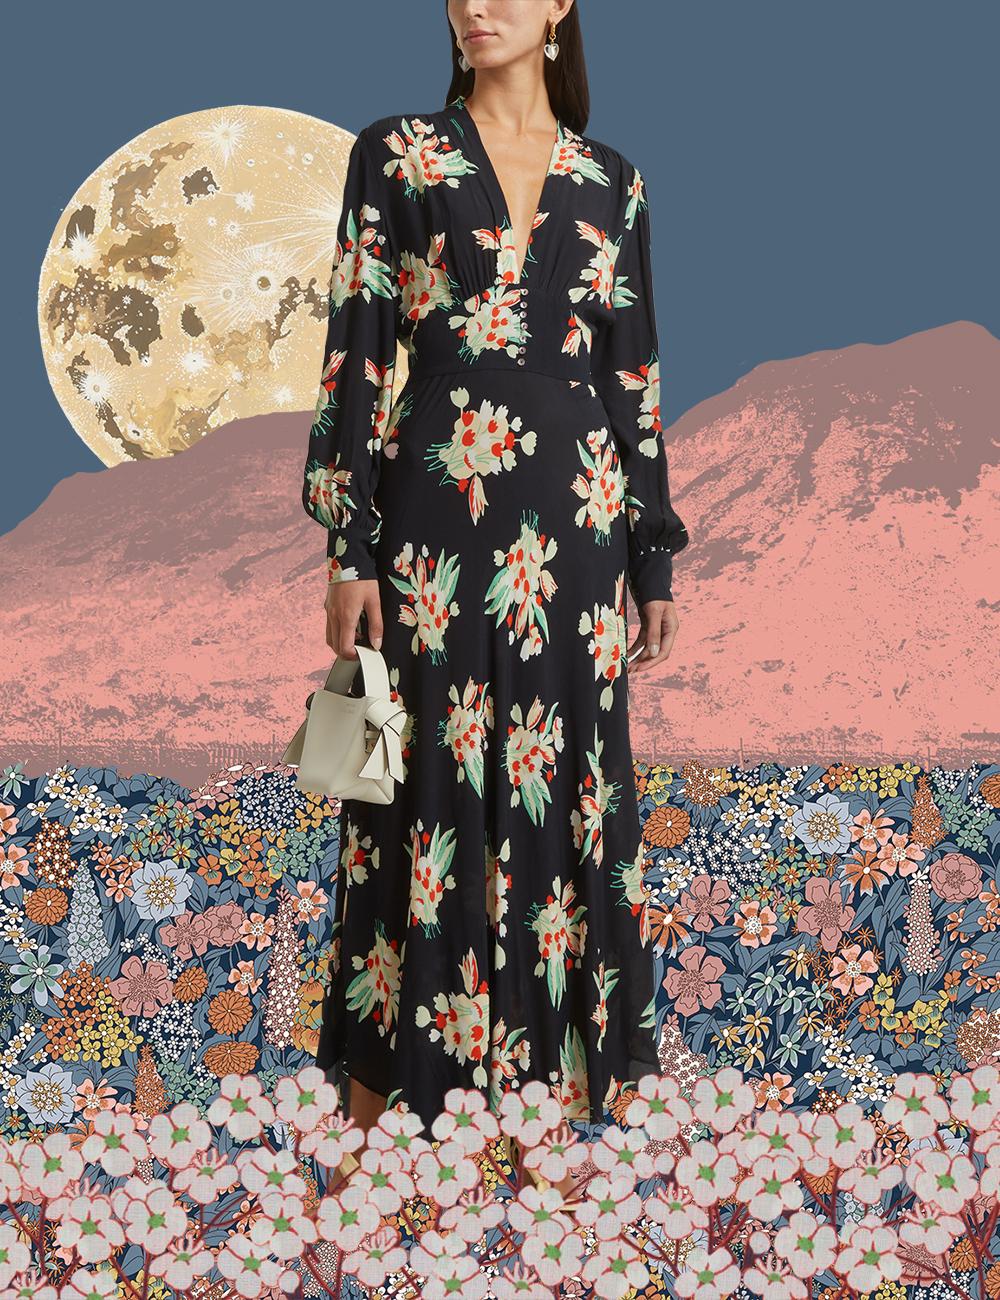 Flower Power: 70's Bell Sleeve Dress • Stop, Drop & Vogue